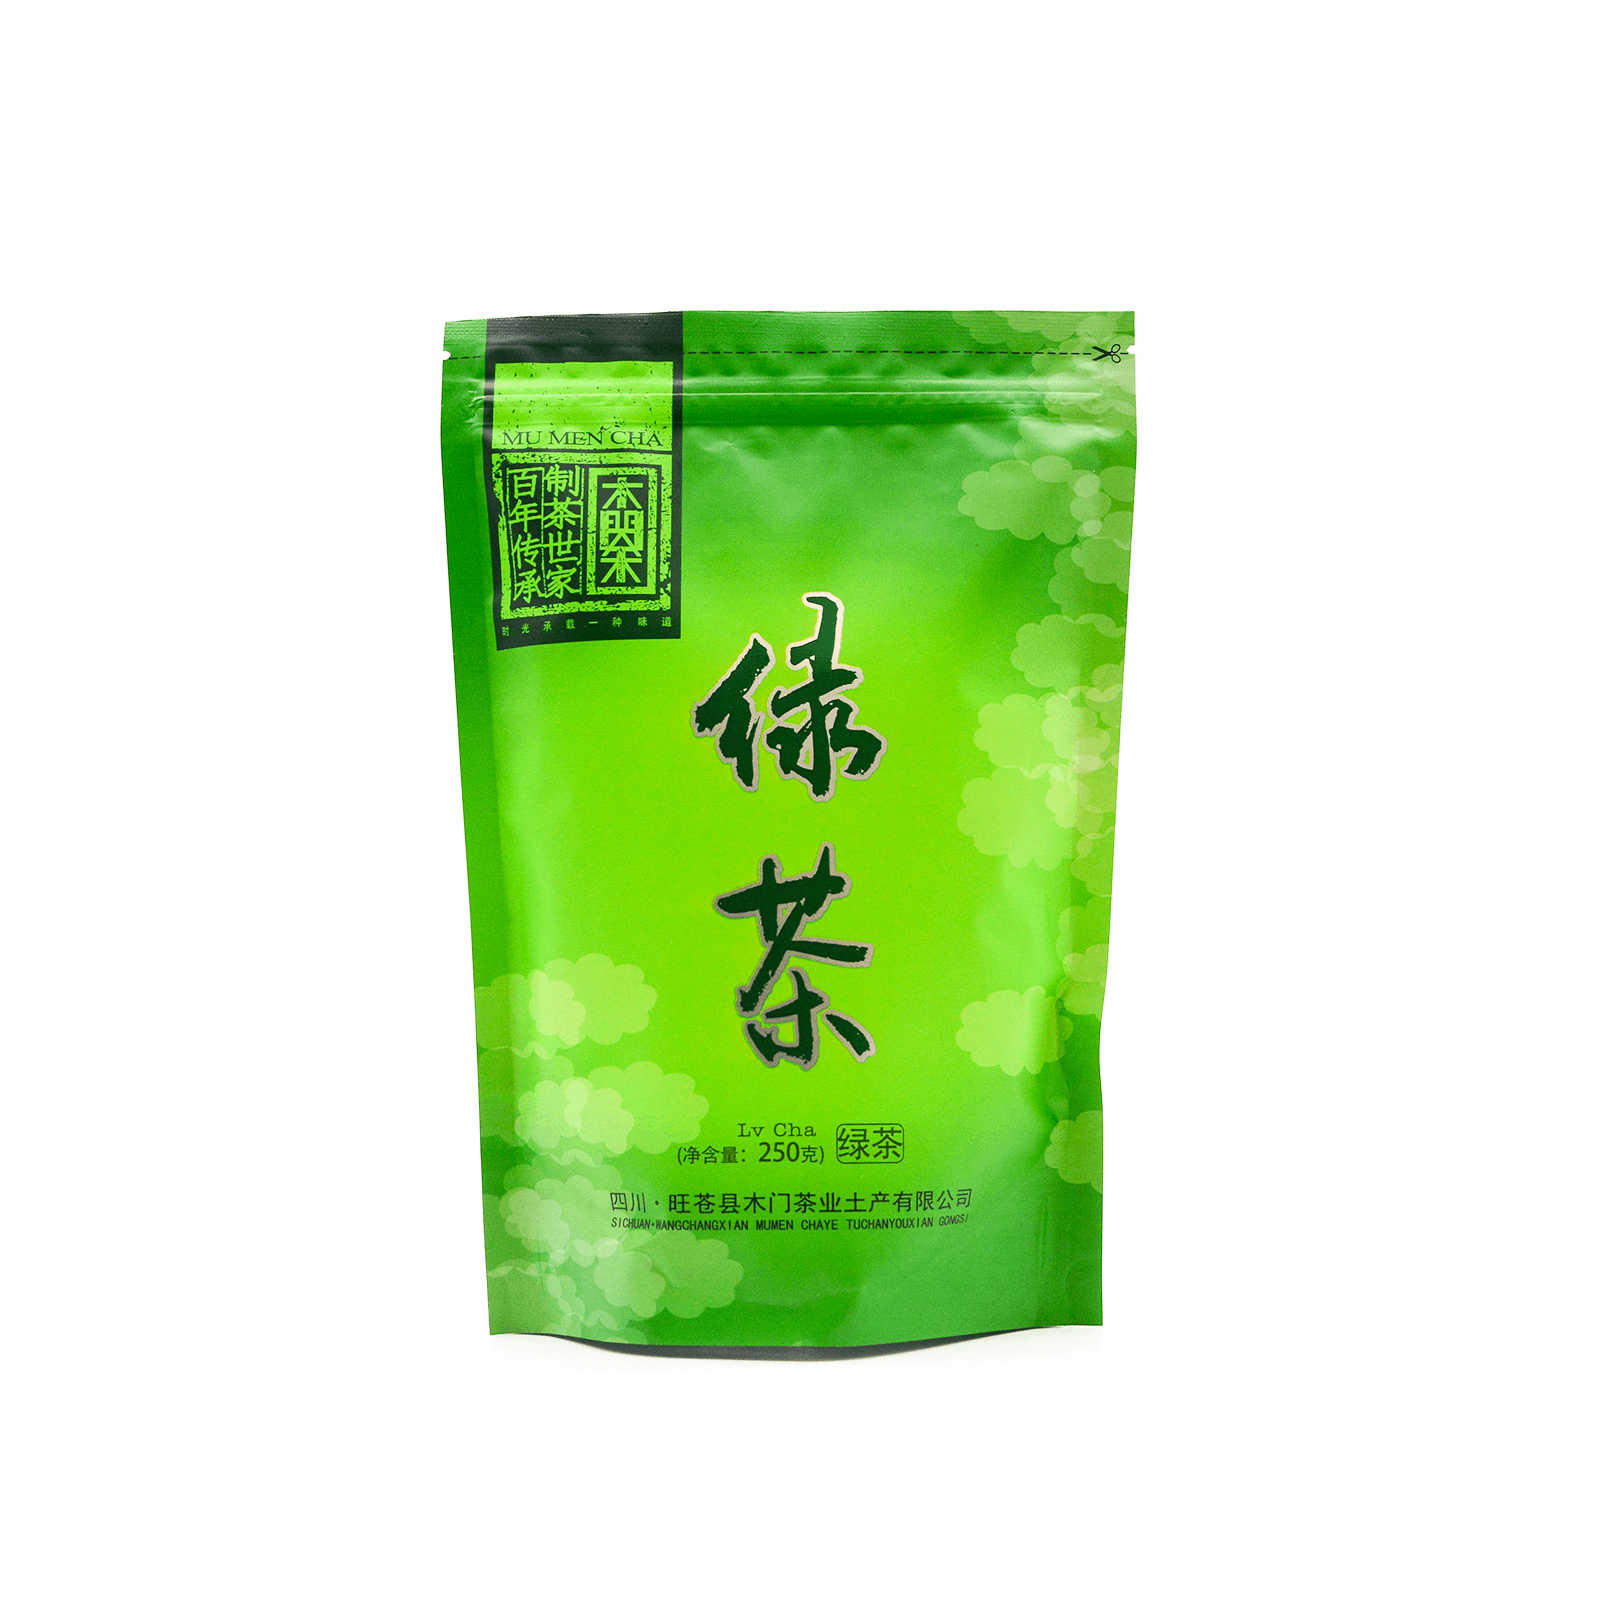 旺苍县木门绿茶250g袋装 帮扶 消费帮扶 消费帮扶公共服务平台 助农 消费 扶贫